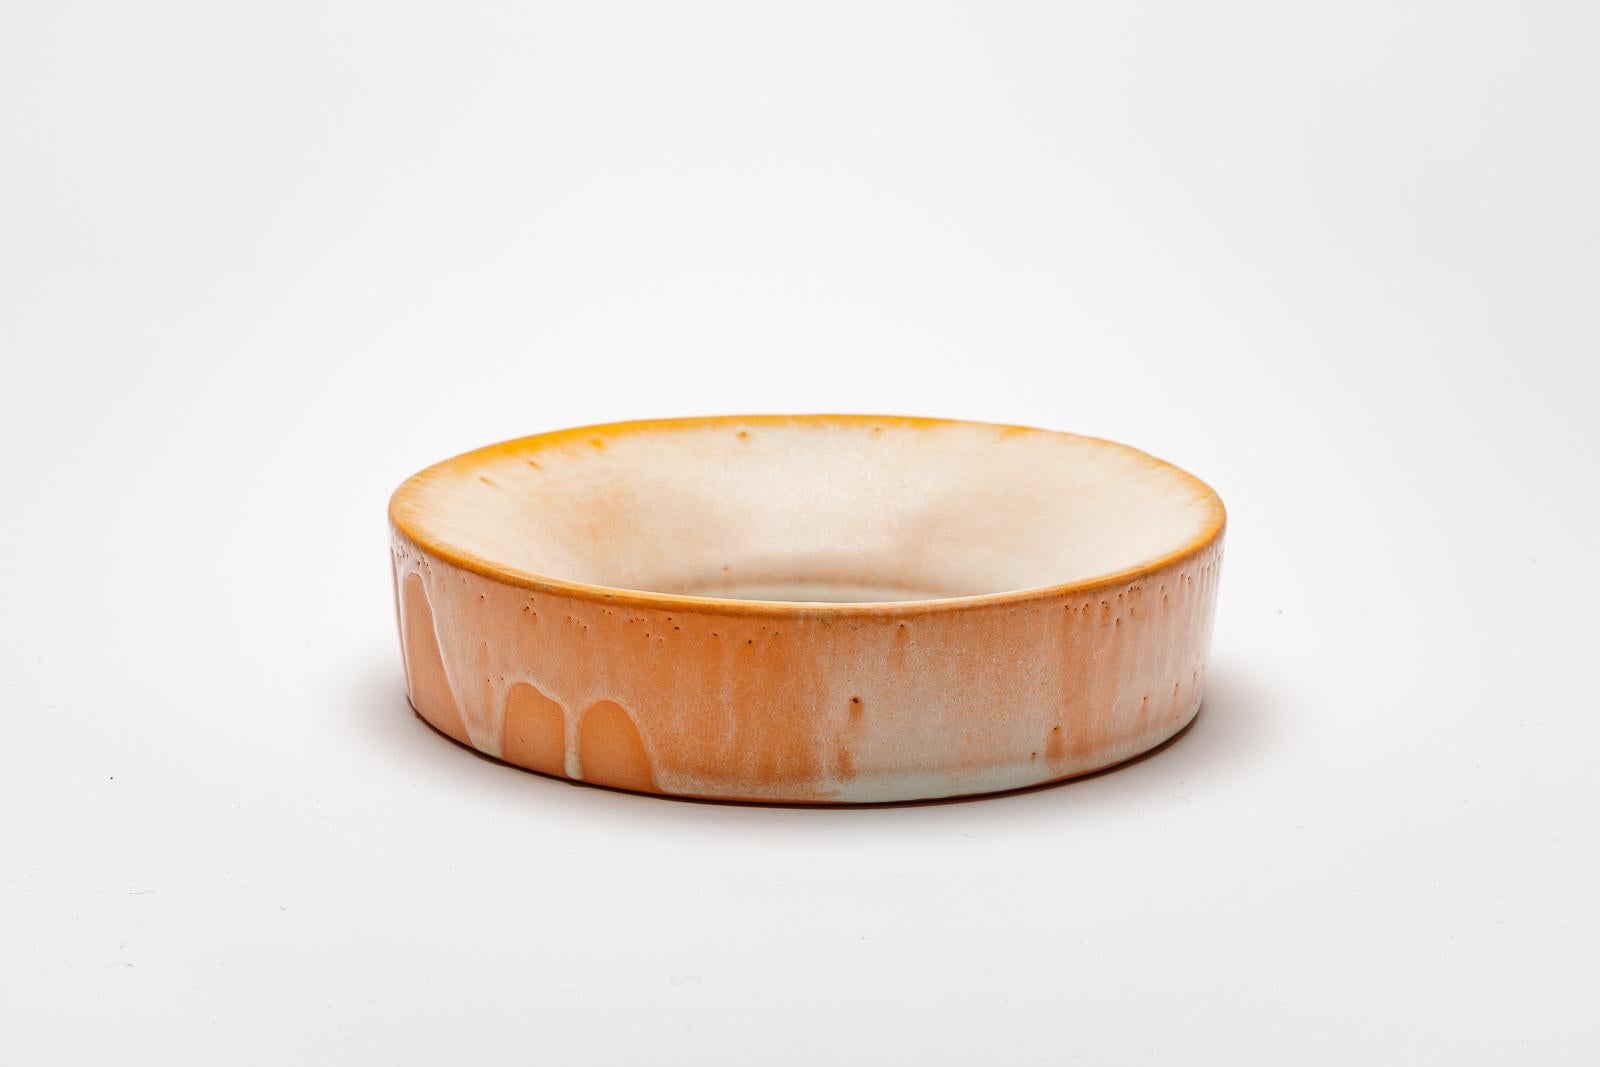 Orange und weiß glasierter Keramikspiegel von Mia Jensen.
Künstlersignatur unter dem Sockel. CIRCA 2023-2024.
H : 1,9' x 8,3' Zoll.